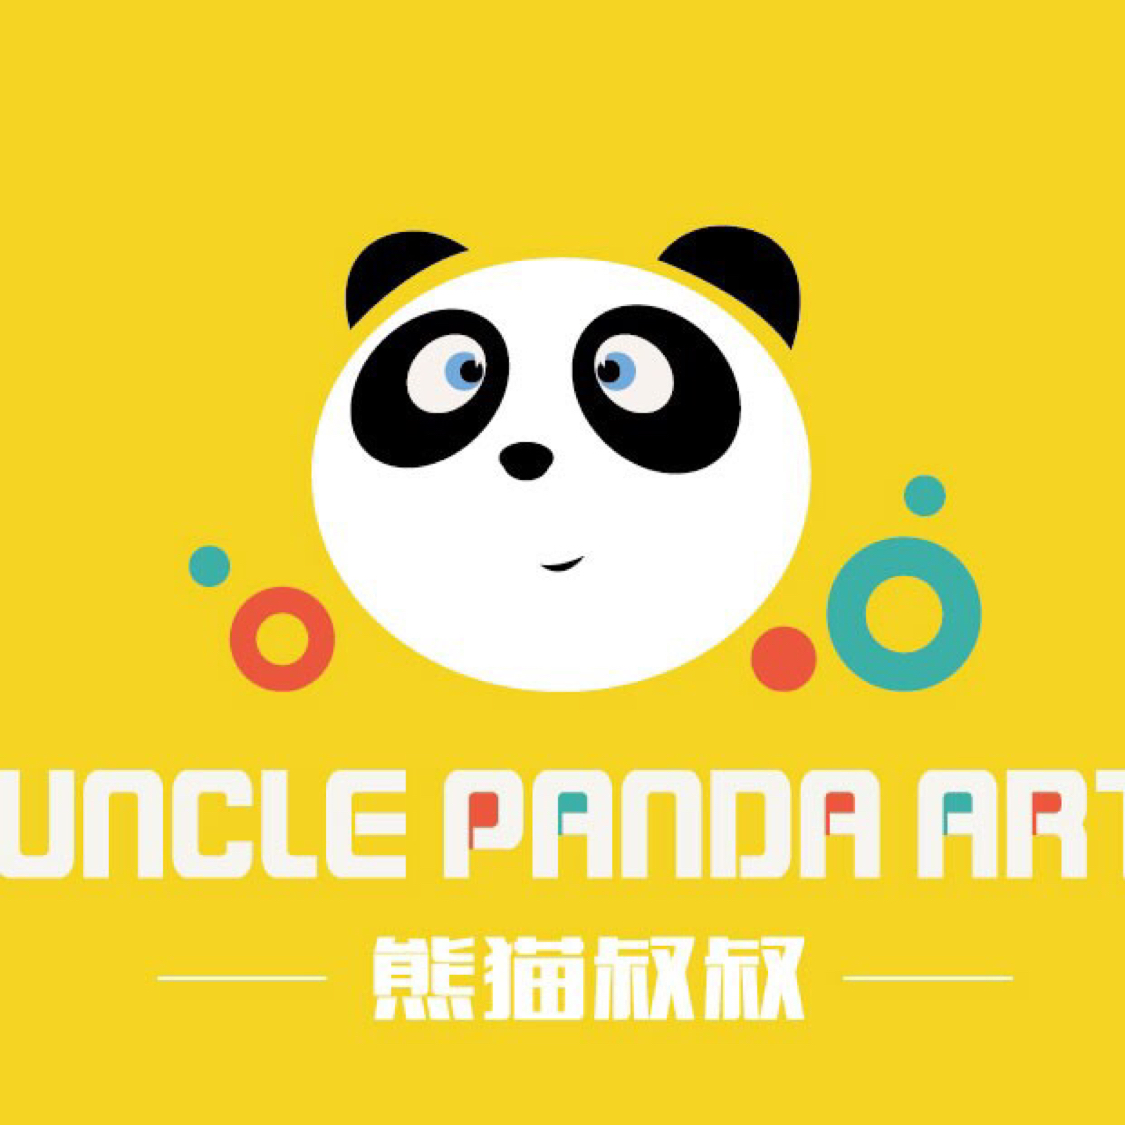 20-99人 熊猫叔叔儿童美术(中国)教育中心专注从事2-12岁的儿童艺术